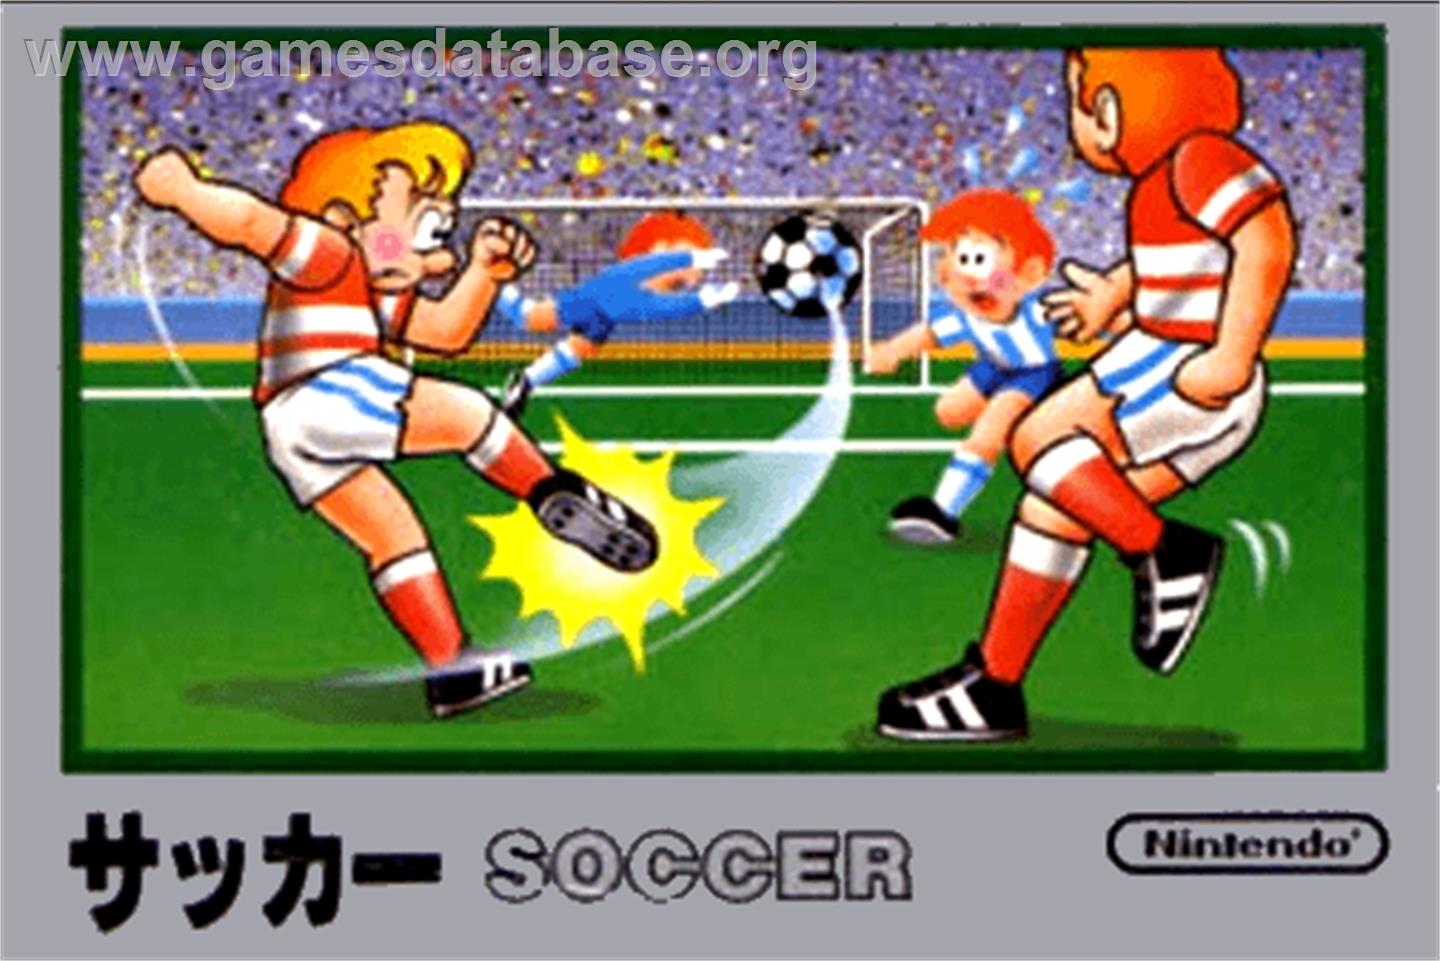 Soccer - Nintendo NES - Artwork - Box